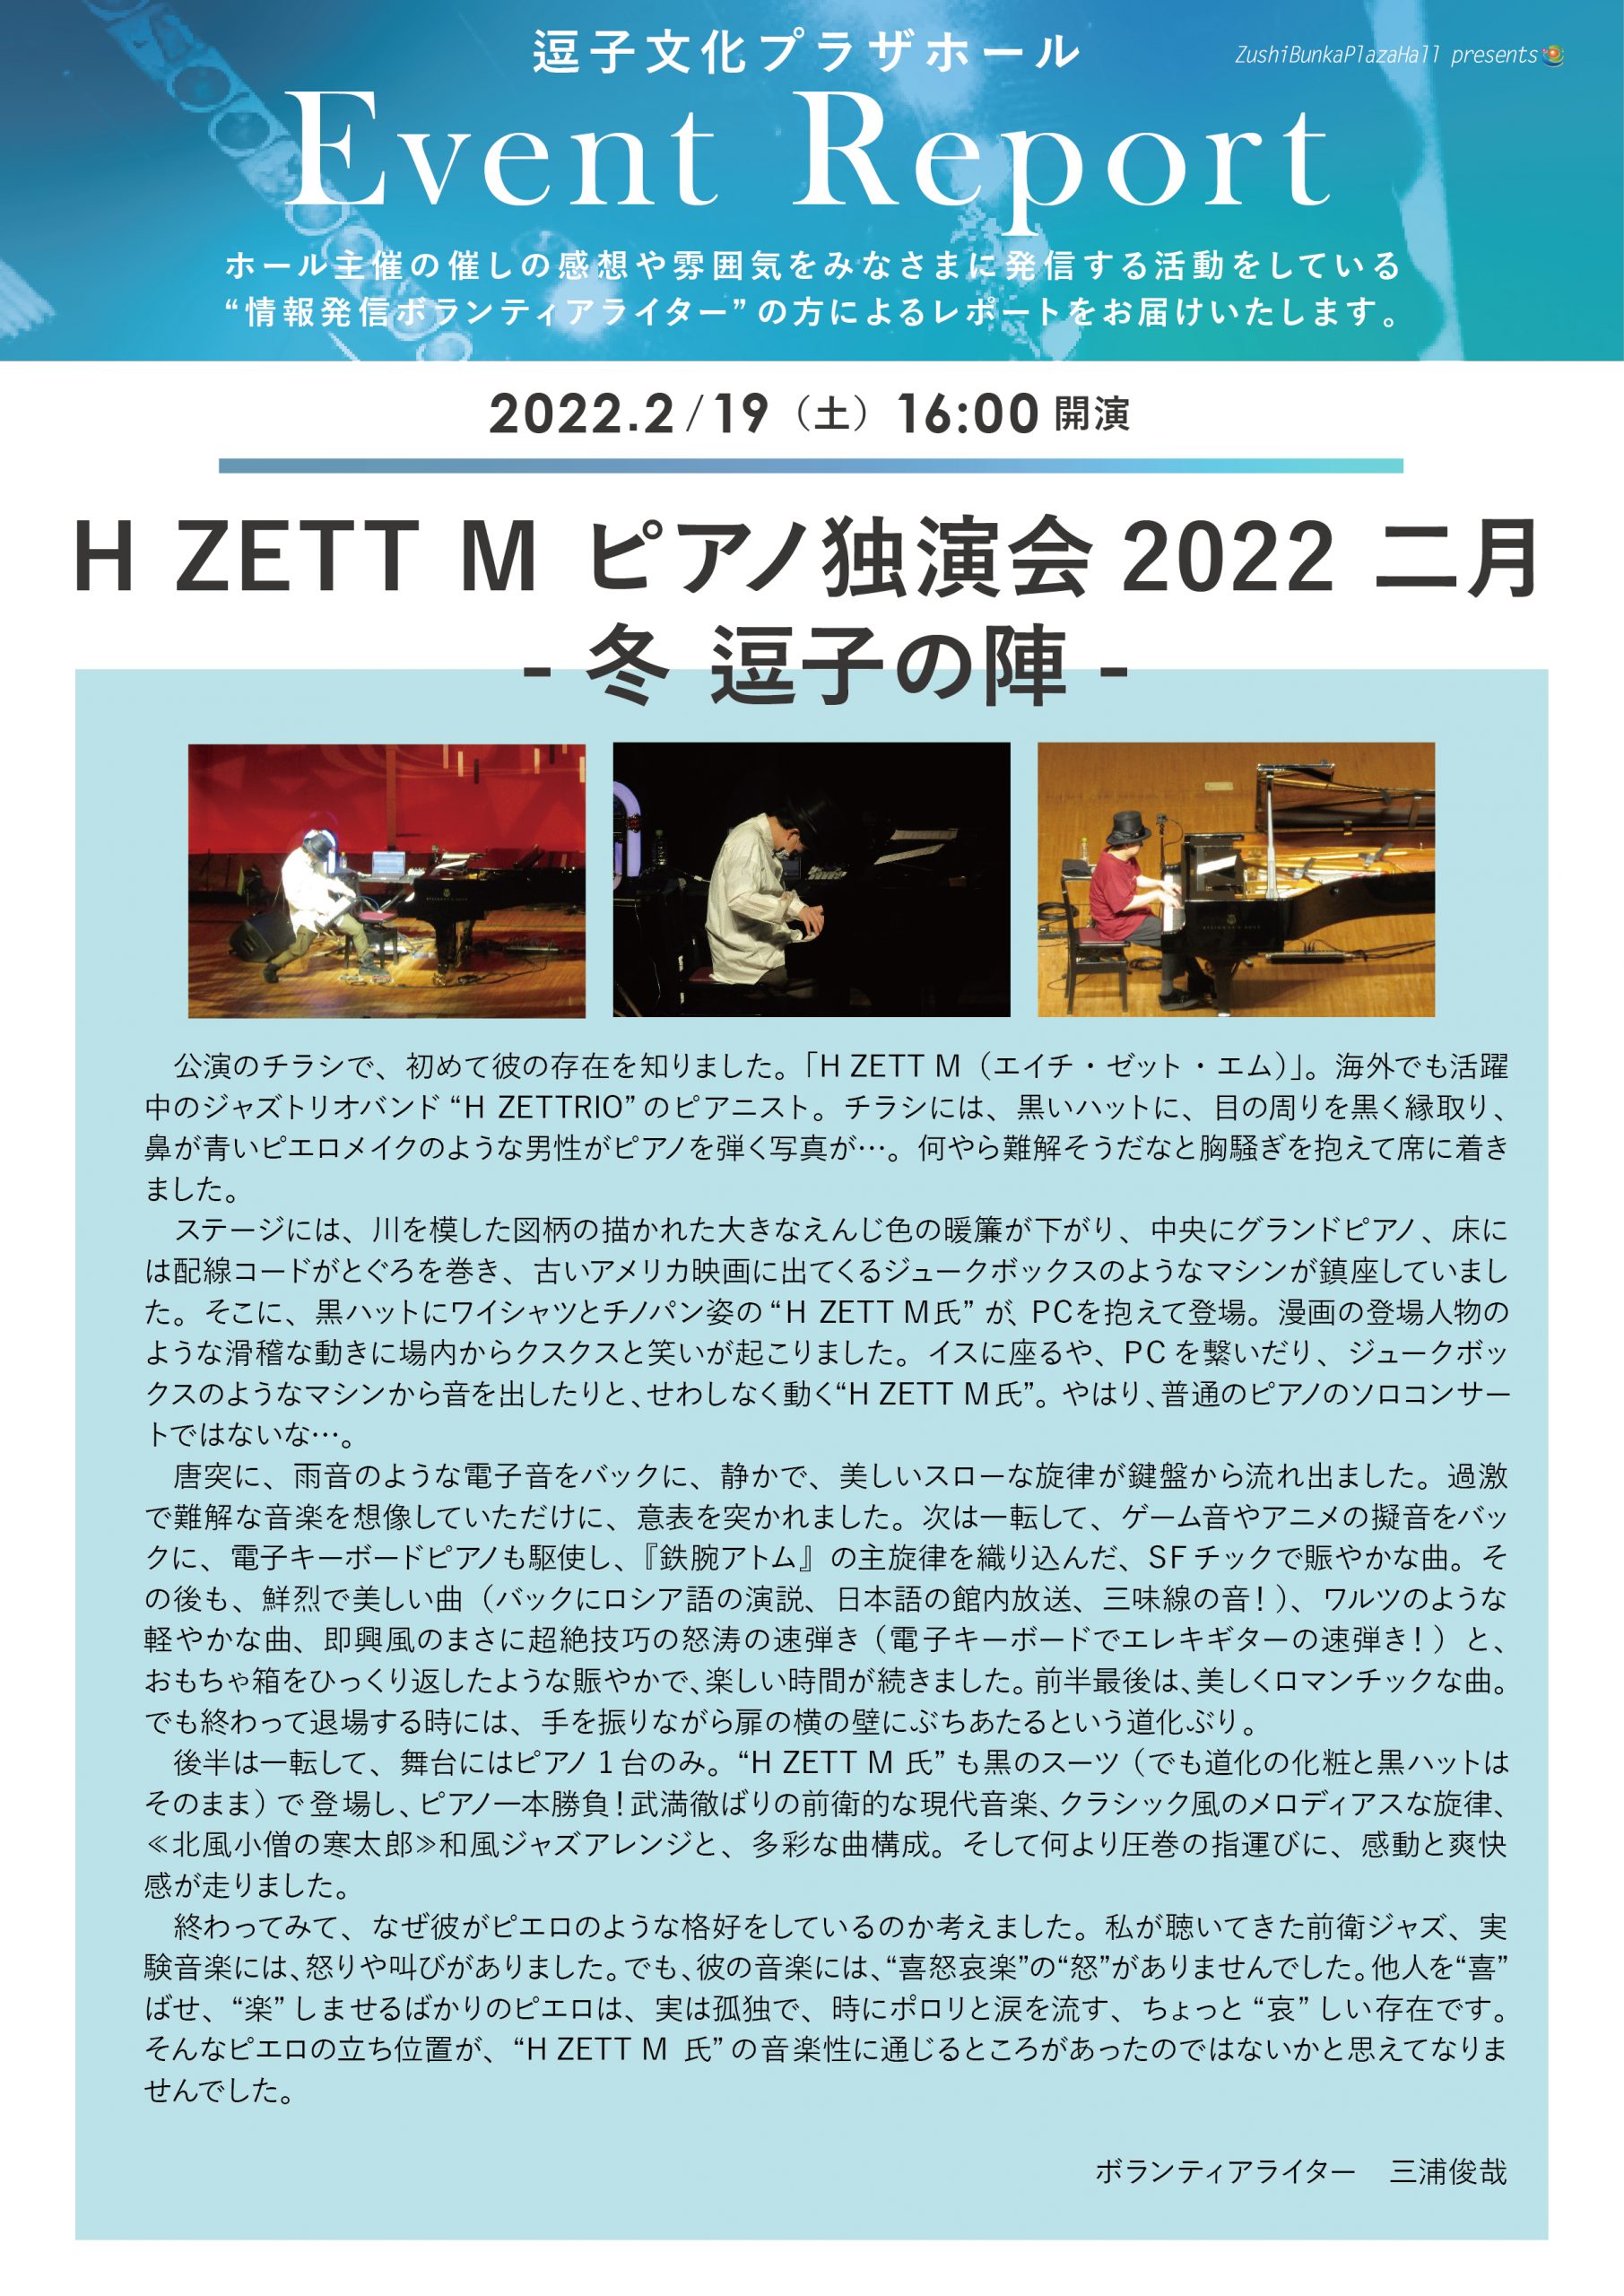 イベントレポート「H ZETT M ピアノ独演会2022 二月 -冬 逗子の陣-」2022年2月19日（土）開催